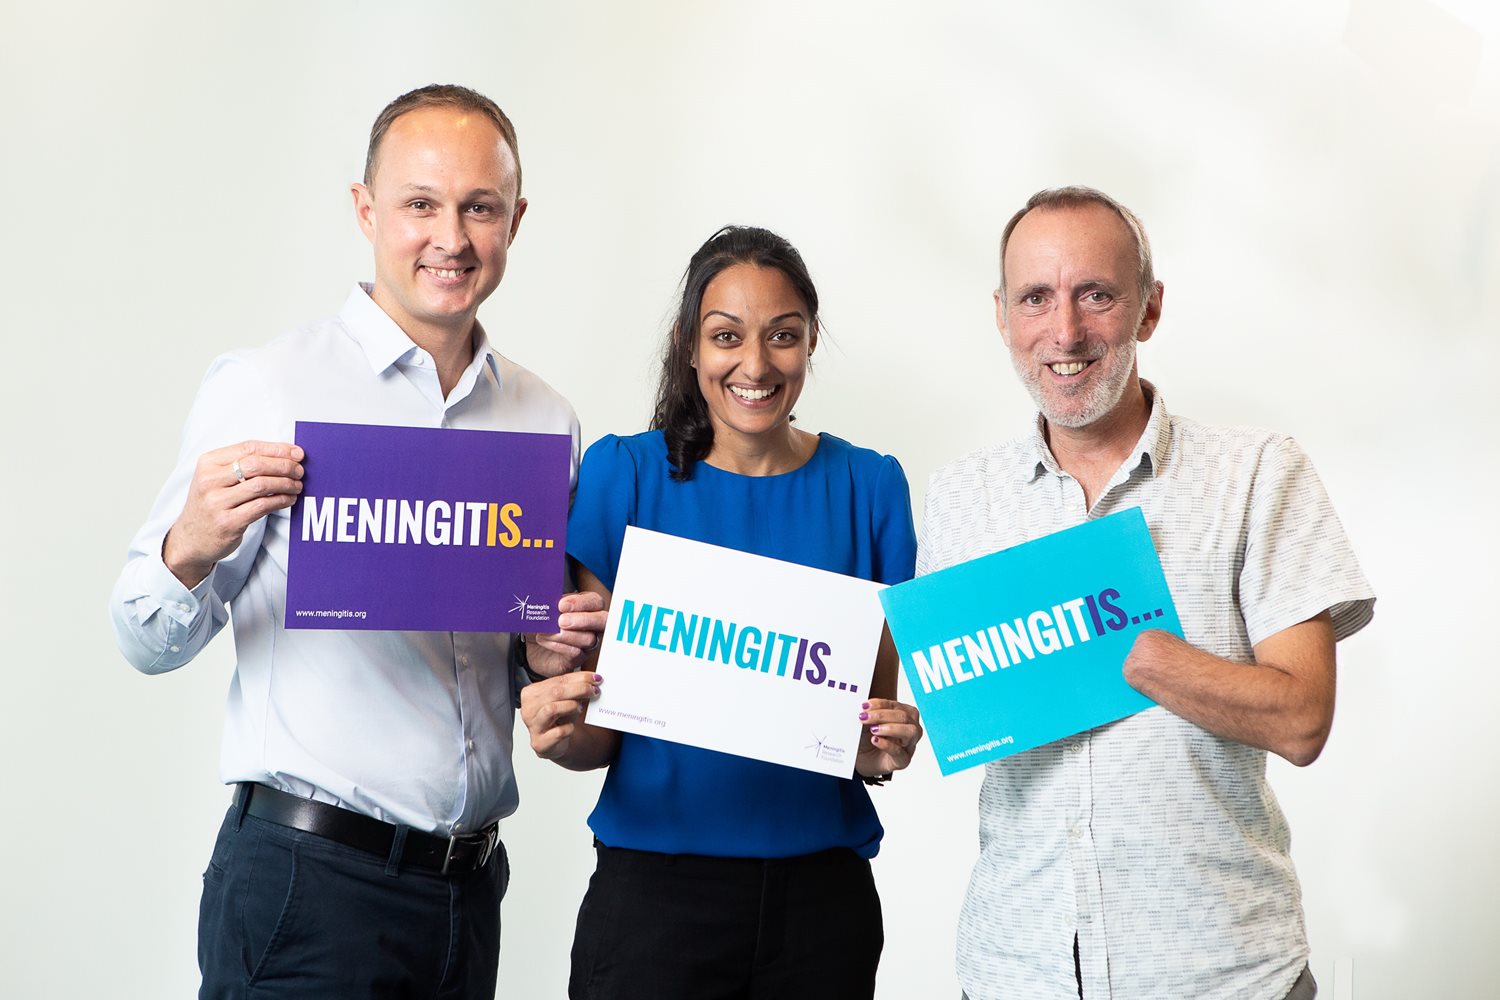 Meningitis is defeatable, says MRF